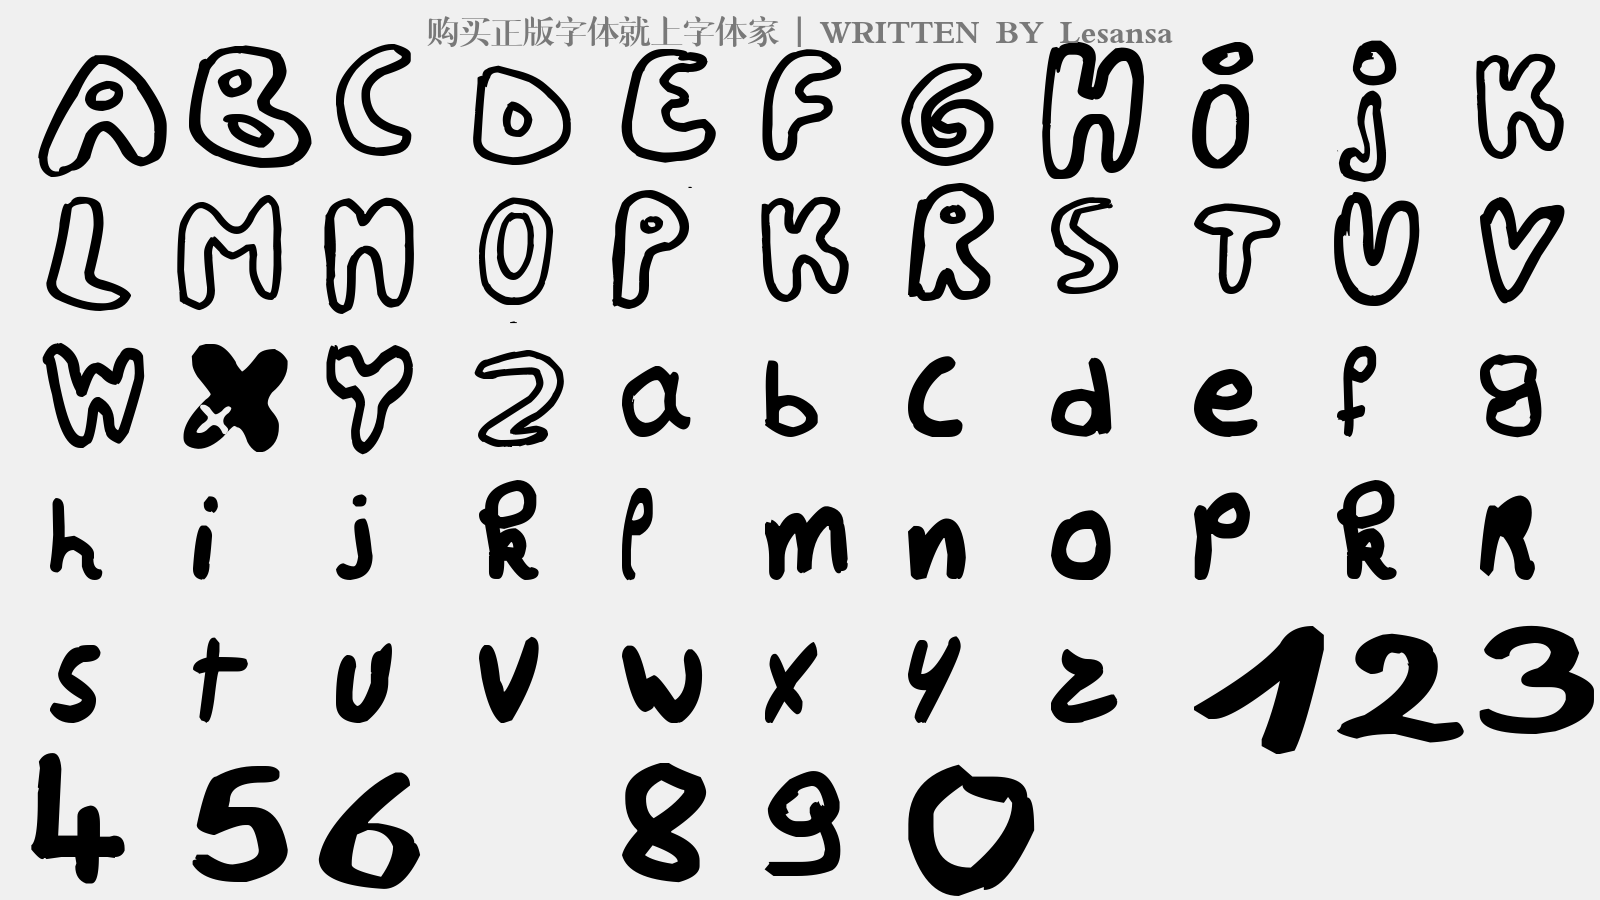 Lesansa - 大写字母/小写字母/数字